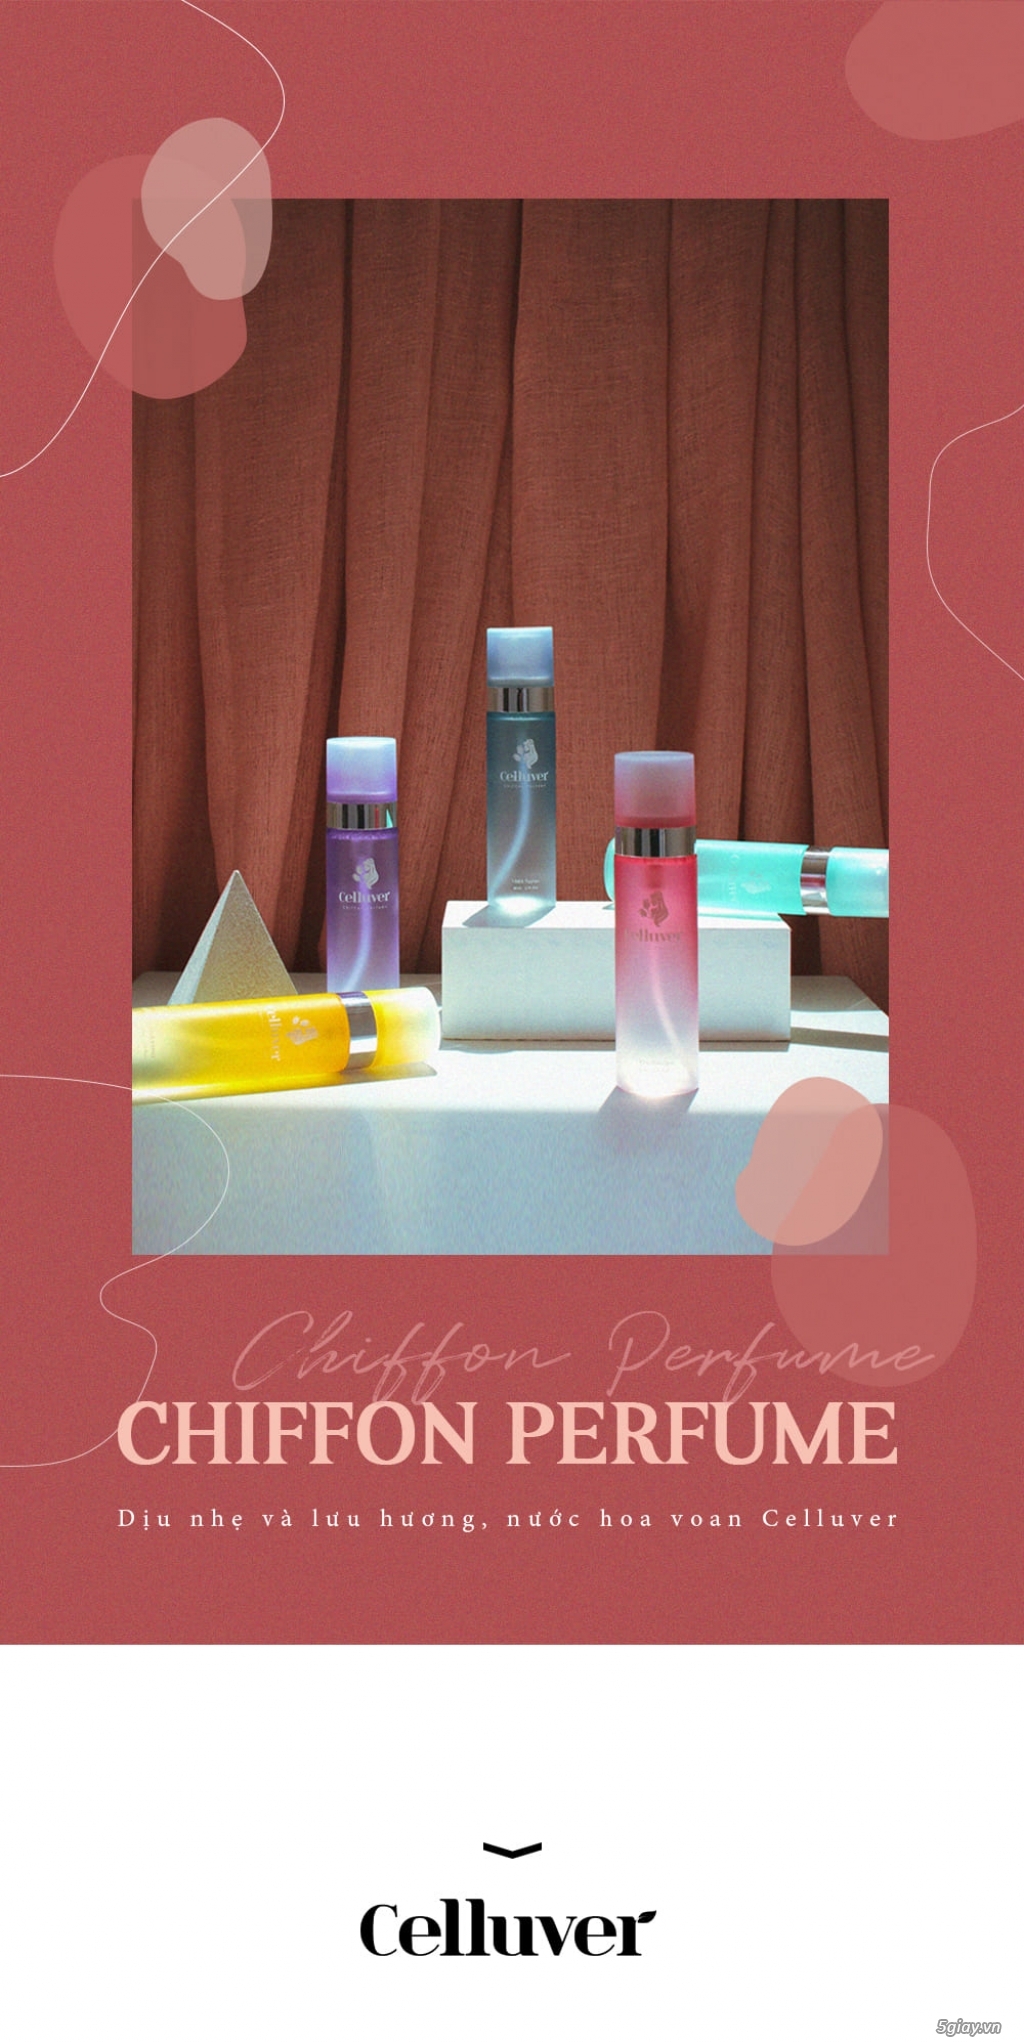 CELLUVER Nước Hoa Voan Chiffon Perfume - 1990 Blair 80ml - 13